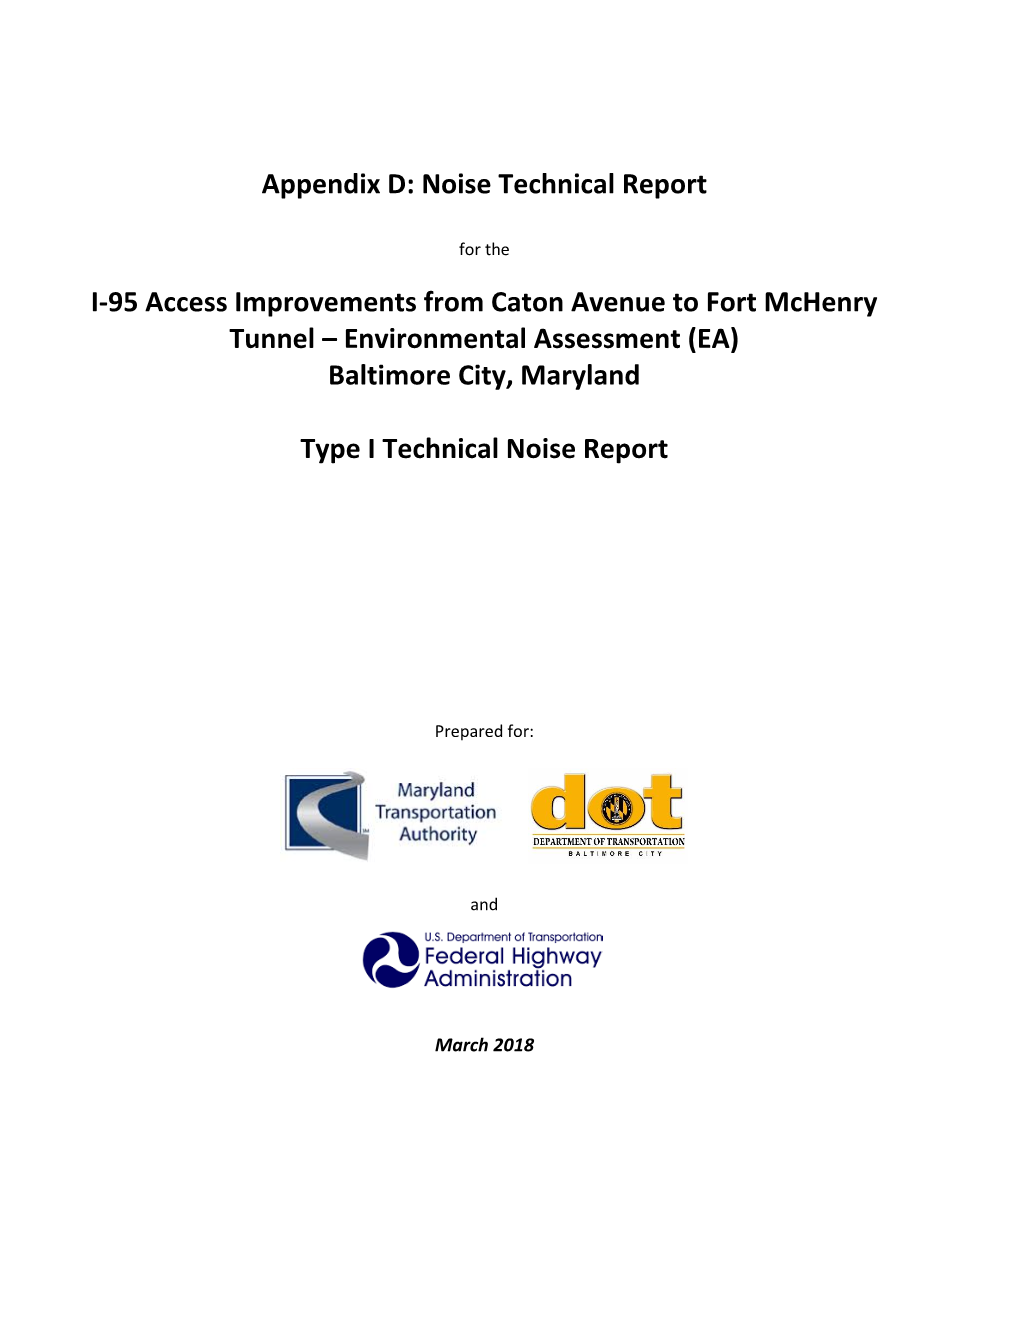 Appendix D: Noise Technical Report I